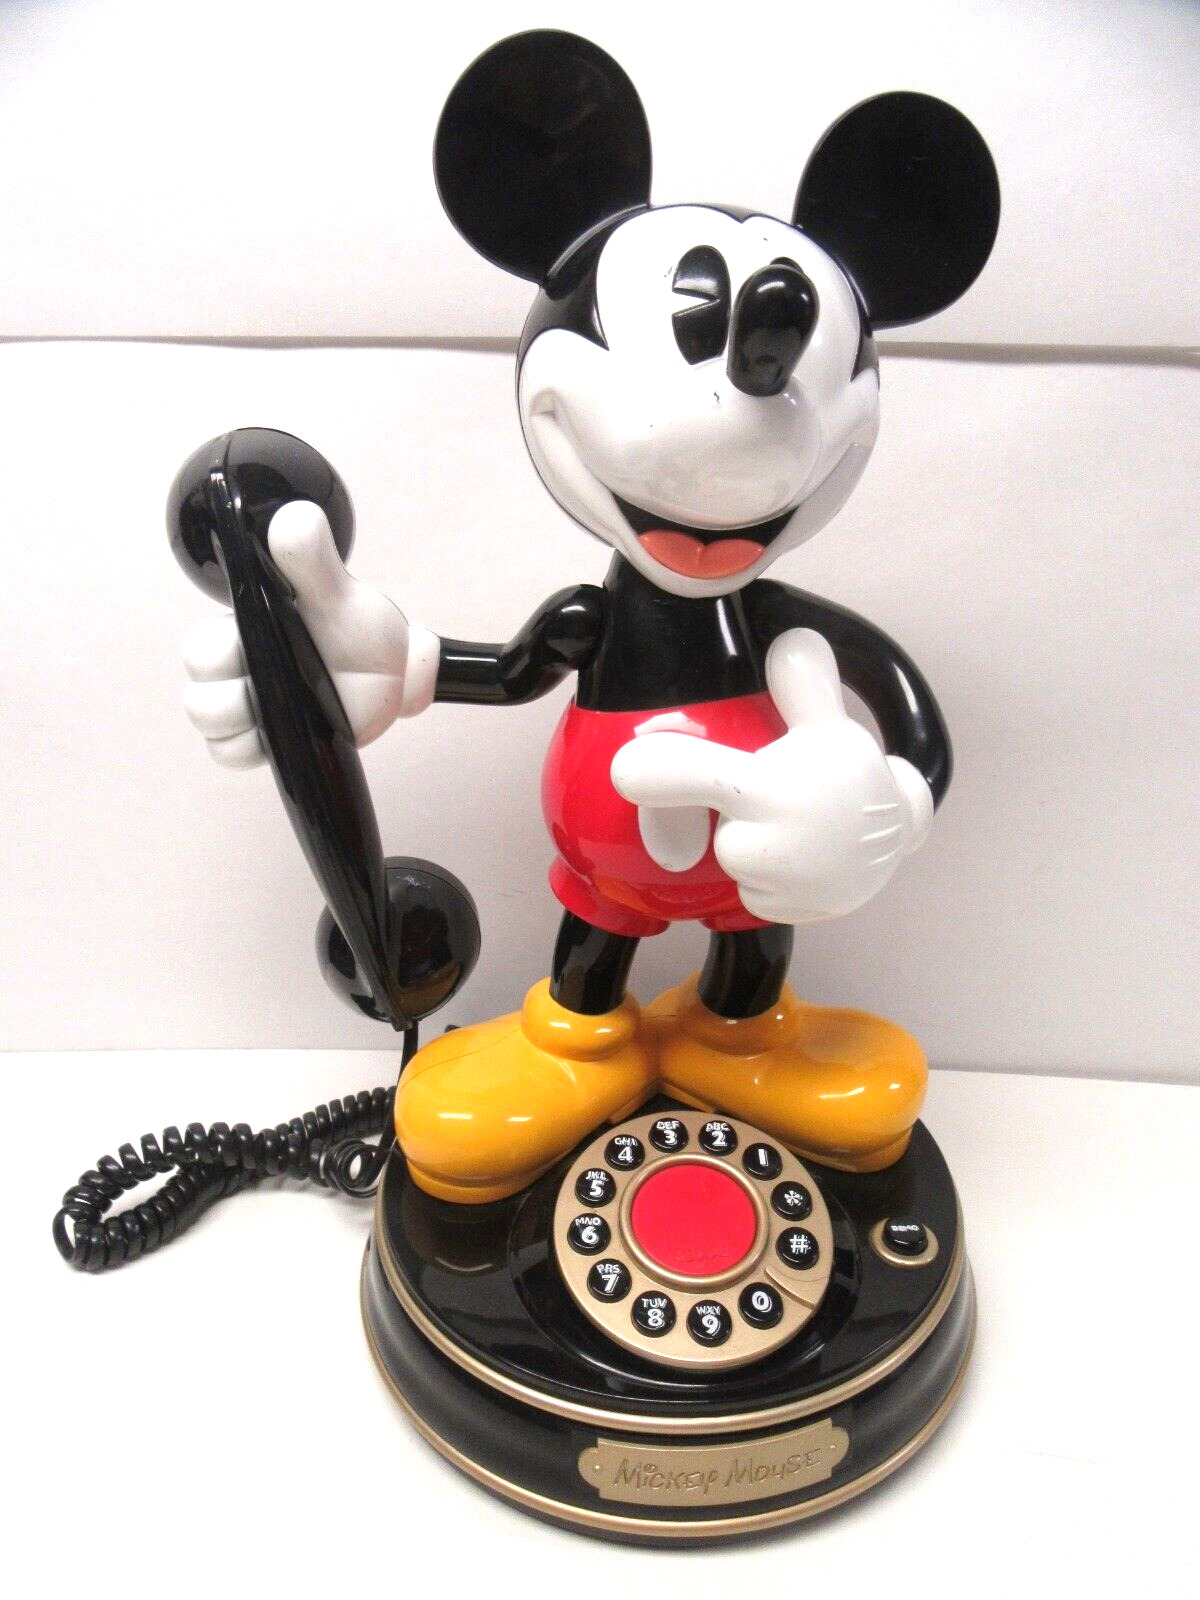 Vintage Mickey Mouse Phone Animated Talks Works 1997 See Pics